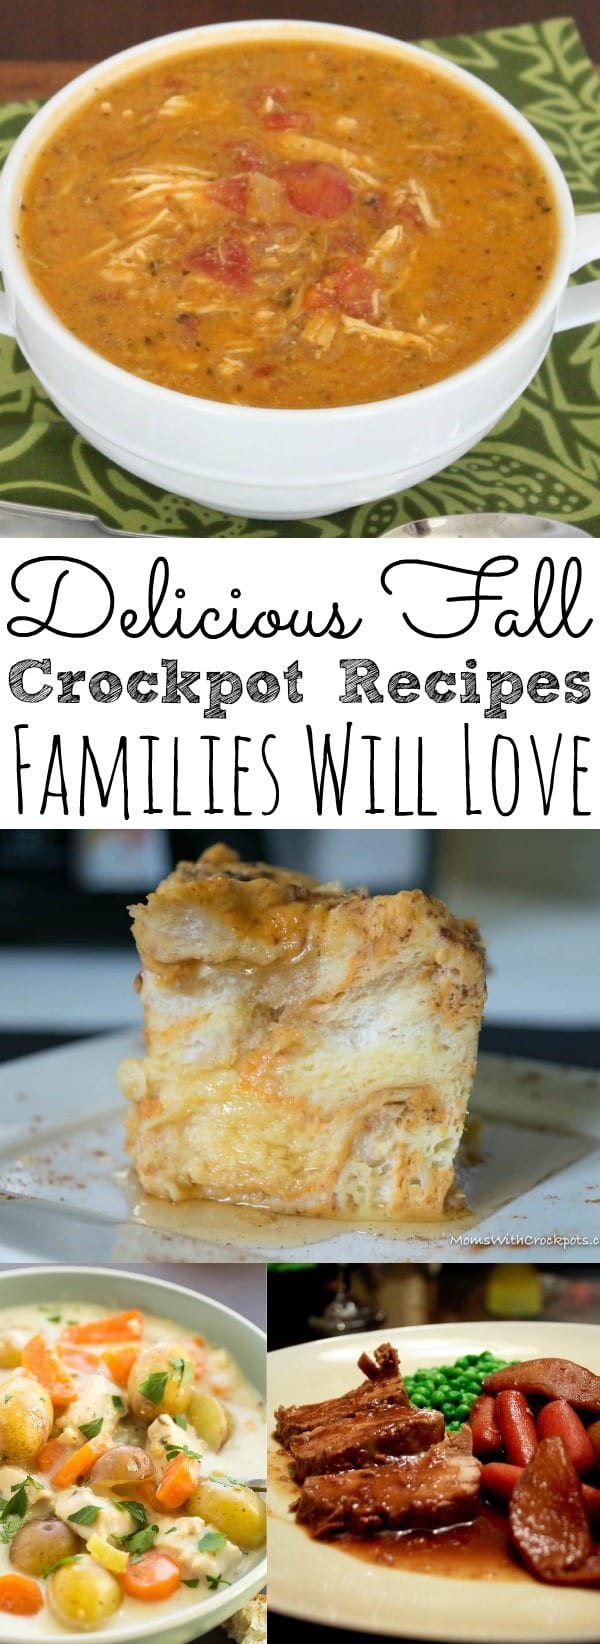 Delicious Fall Crockpot Recipes - simplytodaylife.com